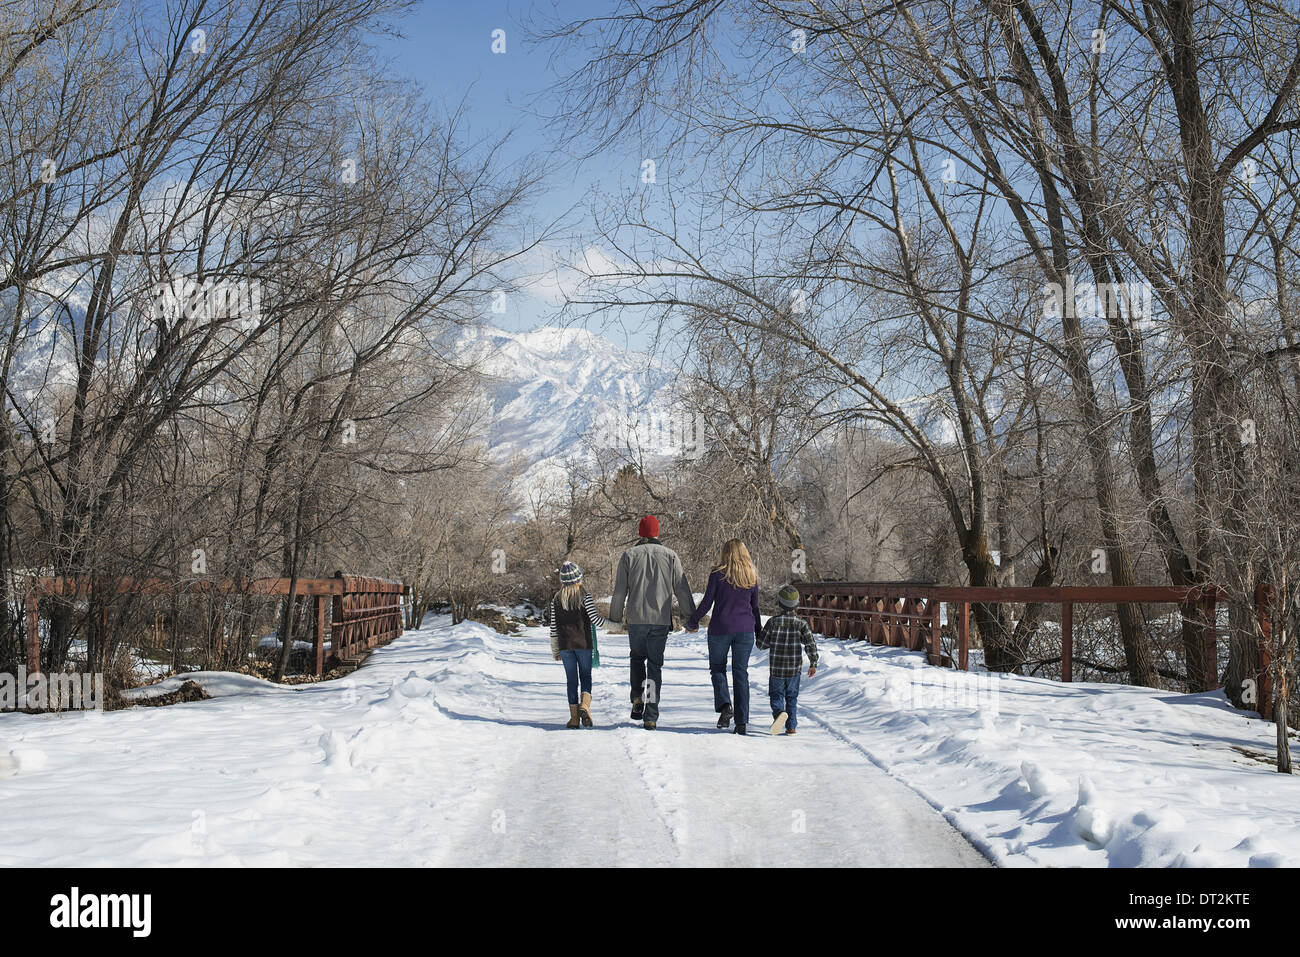 Paesaggio invernale con neve sul terreno una famiglia adulti e due bambini a piedi giù per una strada vuota Foto Stock